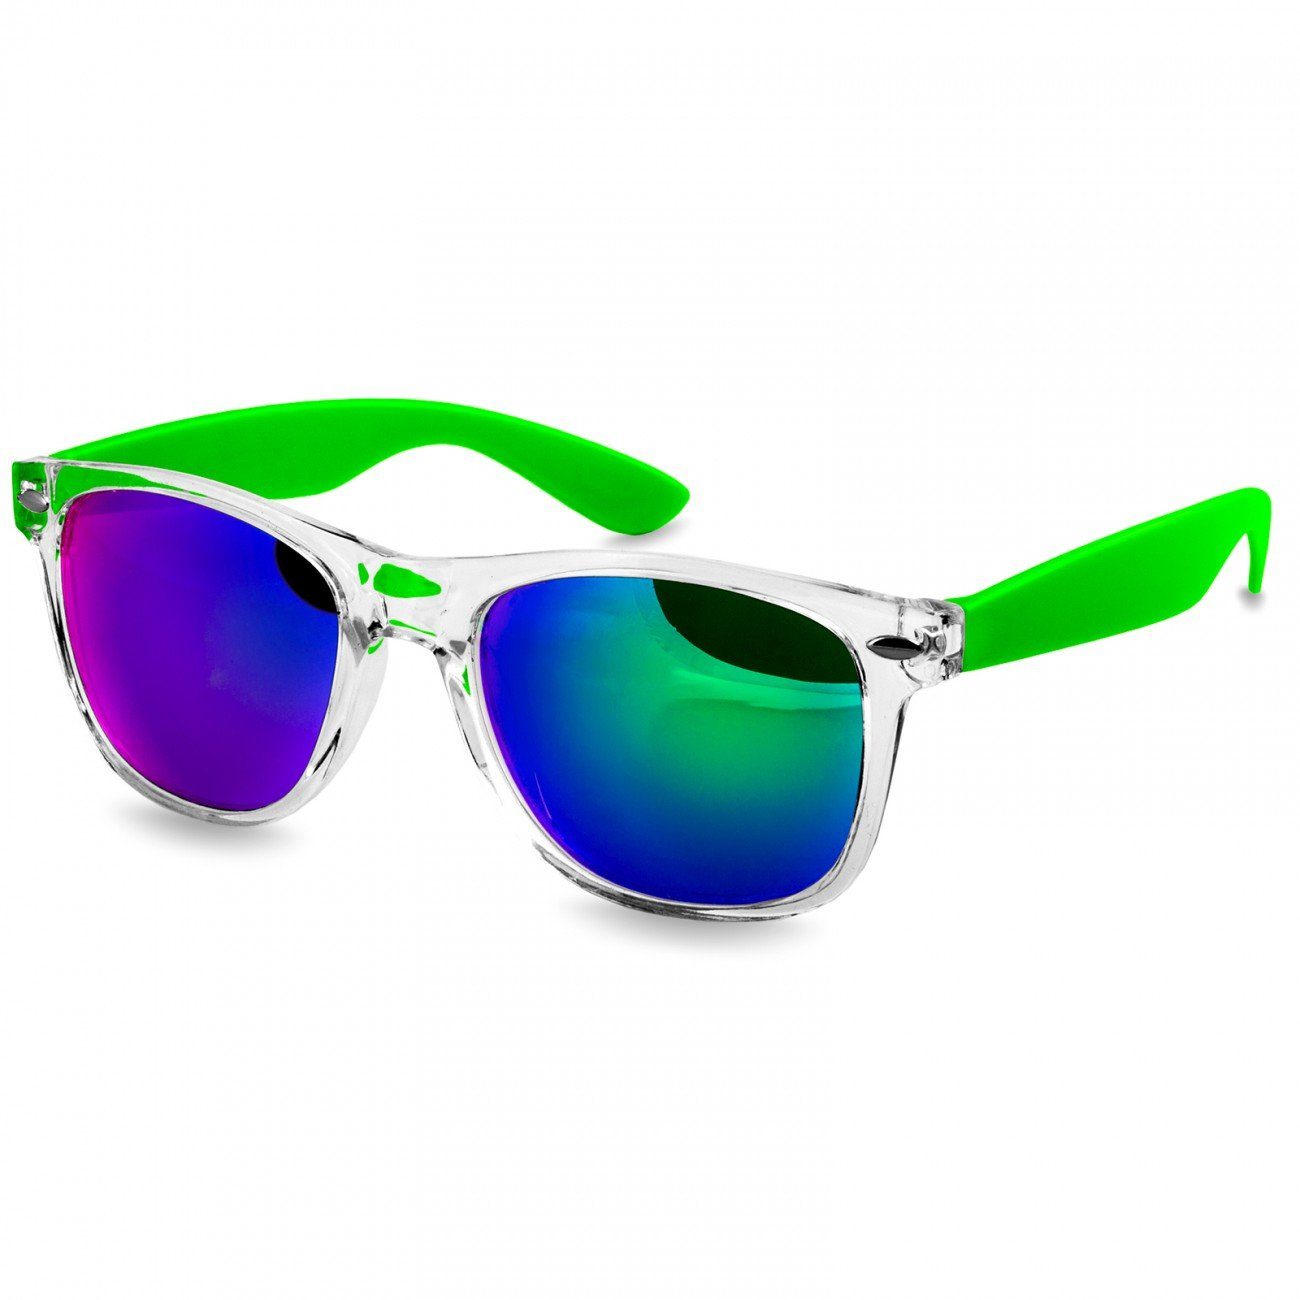 Caspar Sonnenbrille SG017 Damen RETRO Designbrille hellgrün / grün verspiegelt